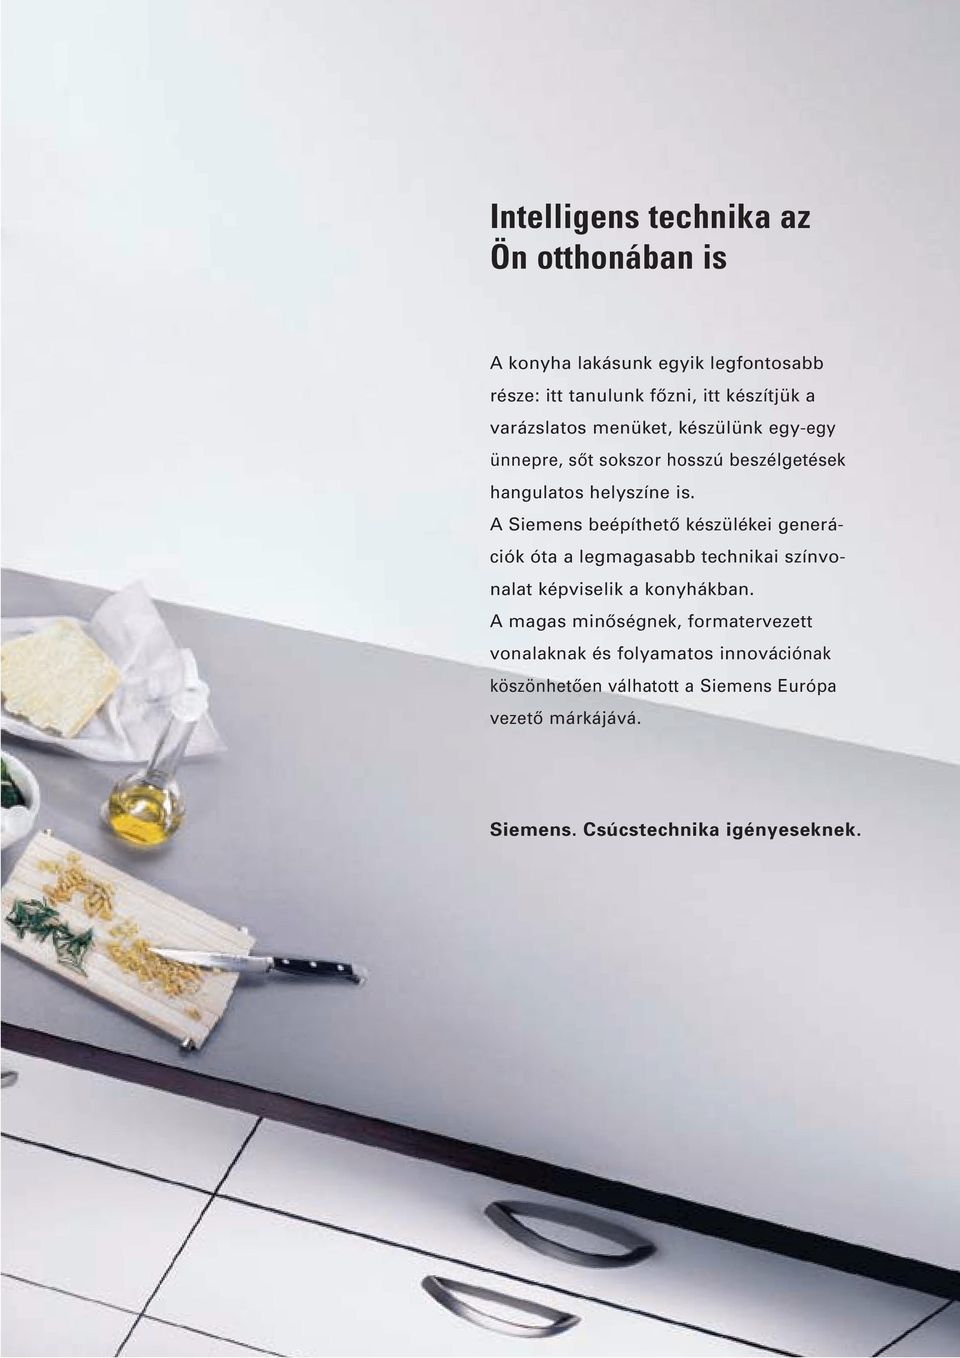 Siemens beépíthetô készülékei generációk óta a legmagasabb technikai színvonalat képviselik a konyhákban.